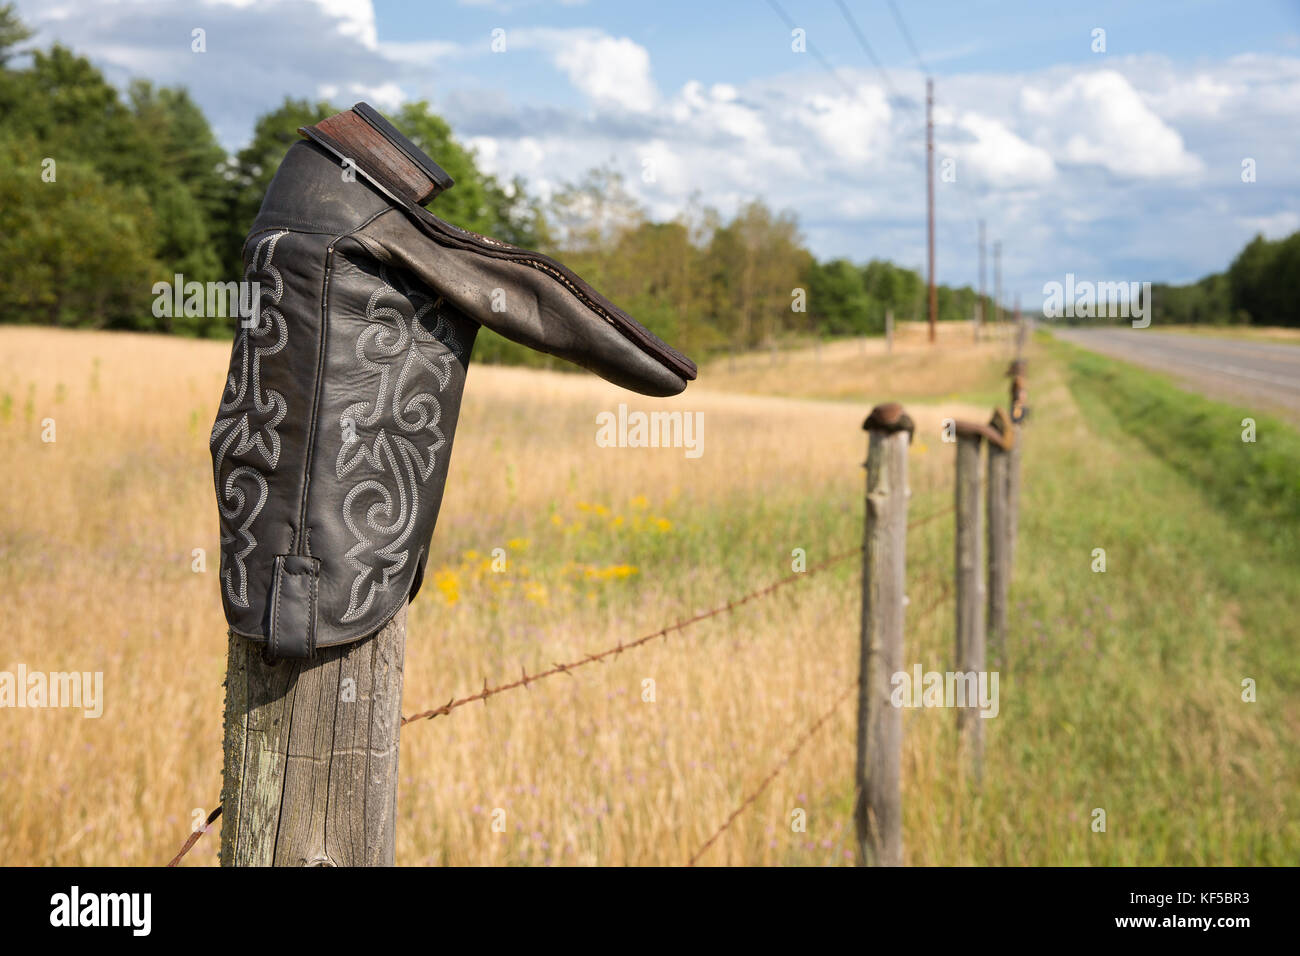 Cowboy boot auf einem Stacheldrahtzaun post. Konzepte der ländlichen Kultur, die Traditionen, die westliche Leben, Humor, andere schließen könnte. Stockfoto